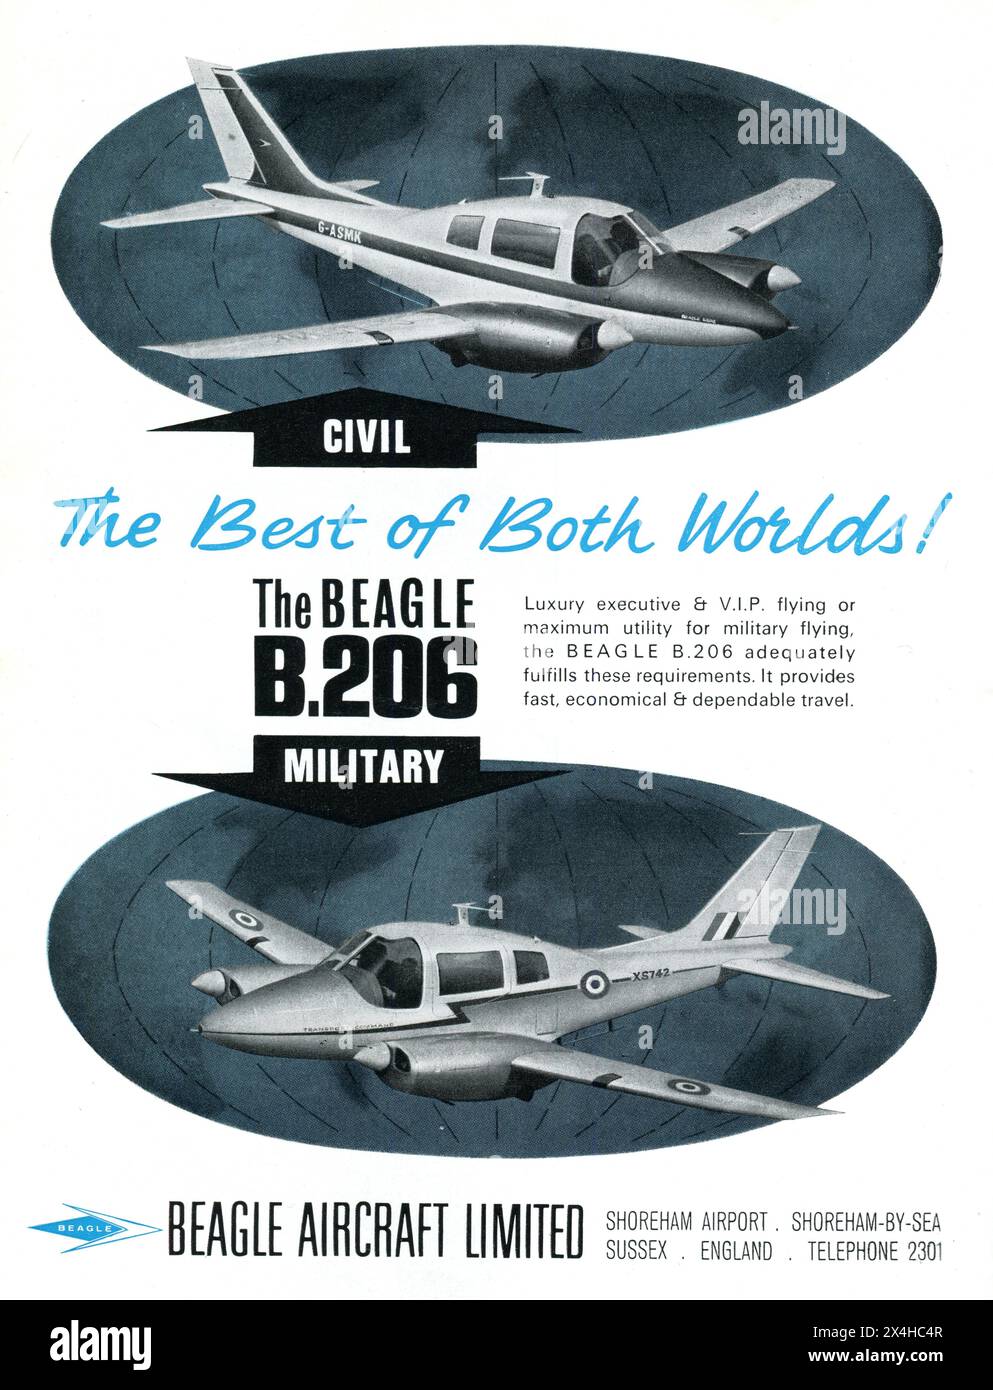 Eine Werbung von Beagle Aircraft Limited aus dem Shoreham Airport, Shoreham-by-Sea, Sussex aus dem Jahr 1964, die für ihr leichtes Flugzeug B.206 wirbt. Sowohl die zivile als auch die militärische Version sind mit dem Slogan „das Beste aus beiden Welten“ versehen. Die B.206 war ein siebensitziges Verbindungs- und Kommunikationsflugzeug mit Doppelkolbenmotor. Der Prototyp absolvierte seinen ersten Flug am 15. August 1961 und ging zwischen 1964 und 1969 in Produktion. Stockfoto